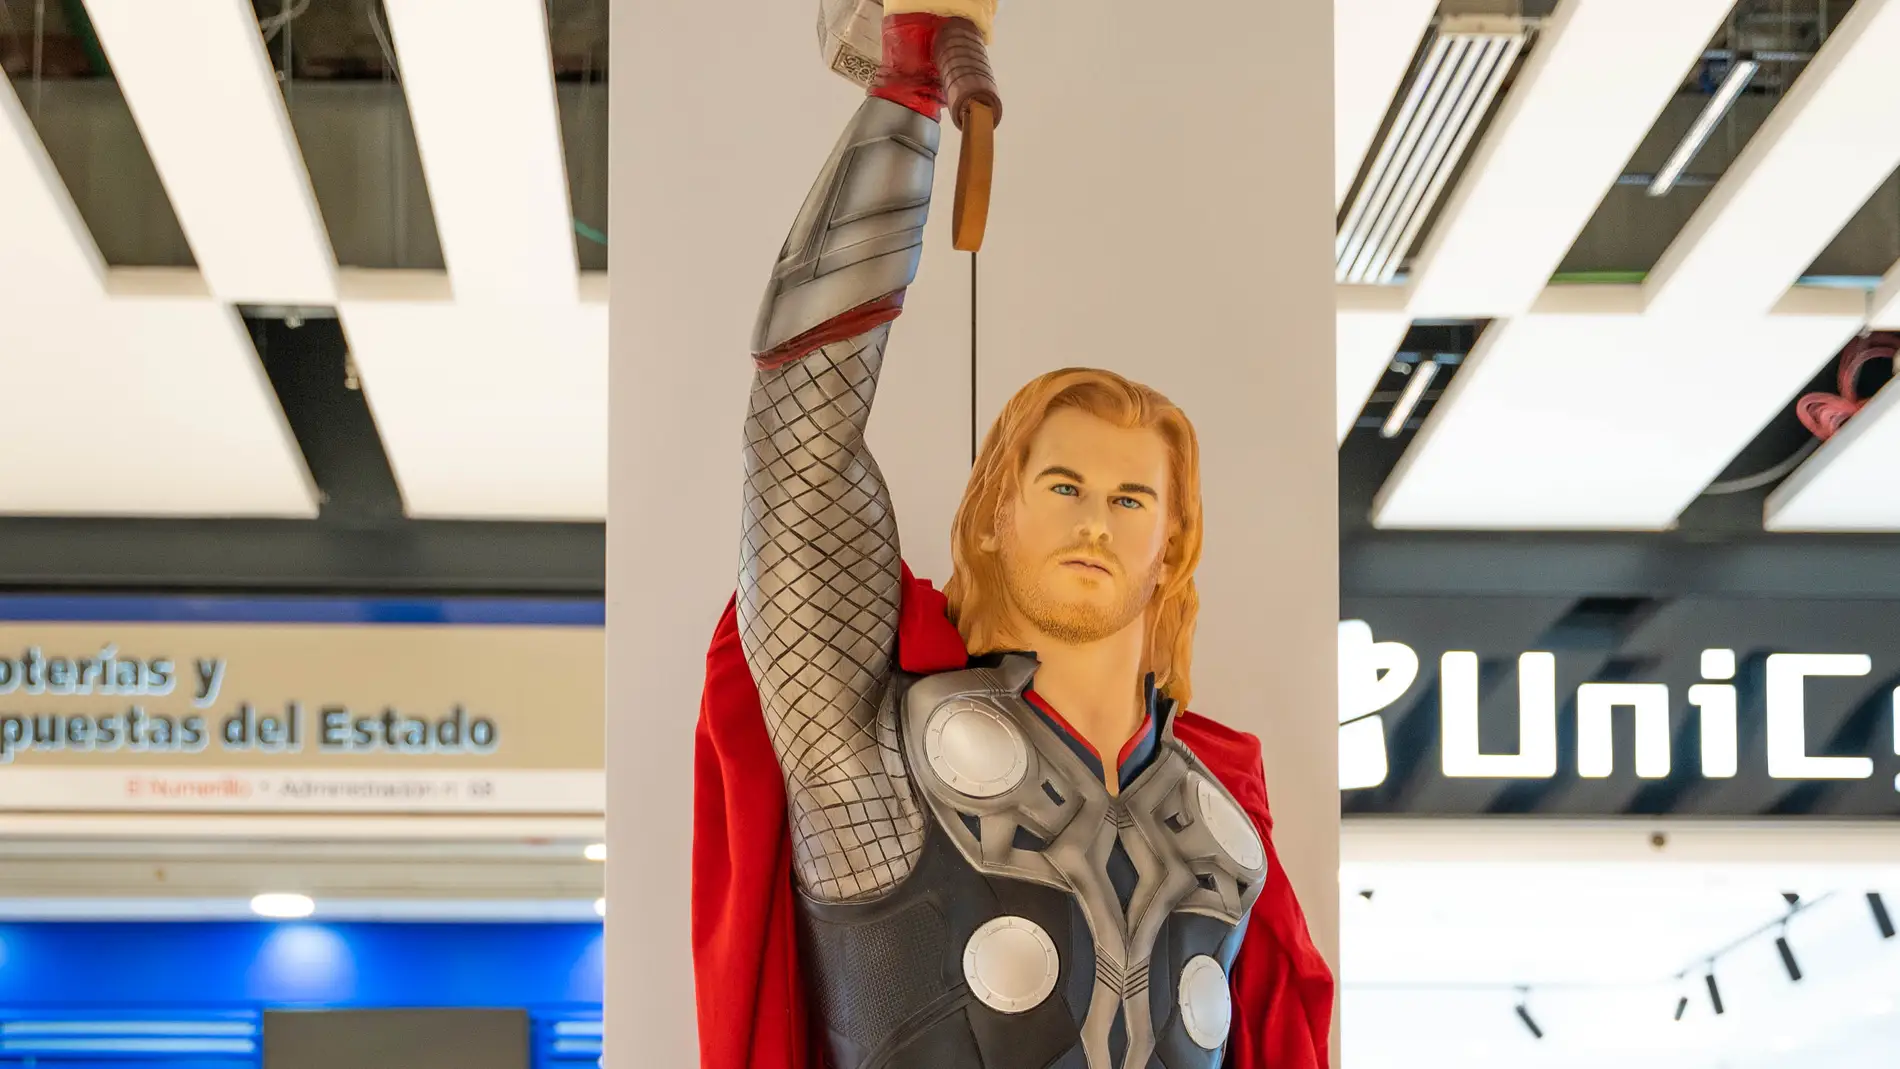 El mundo de los superhéroes llega a Larios Centro en una exposición compuesta por figuras a tamaño real y réplicas